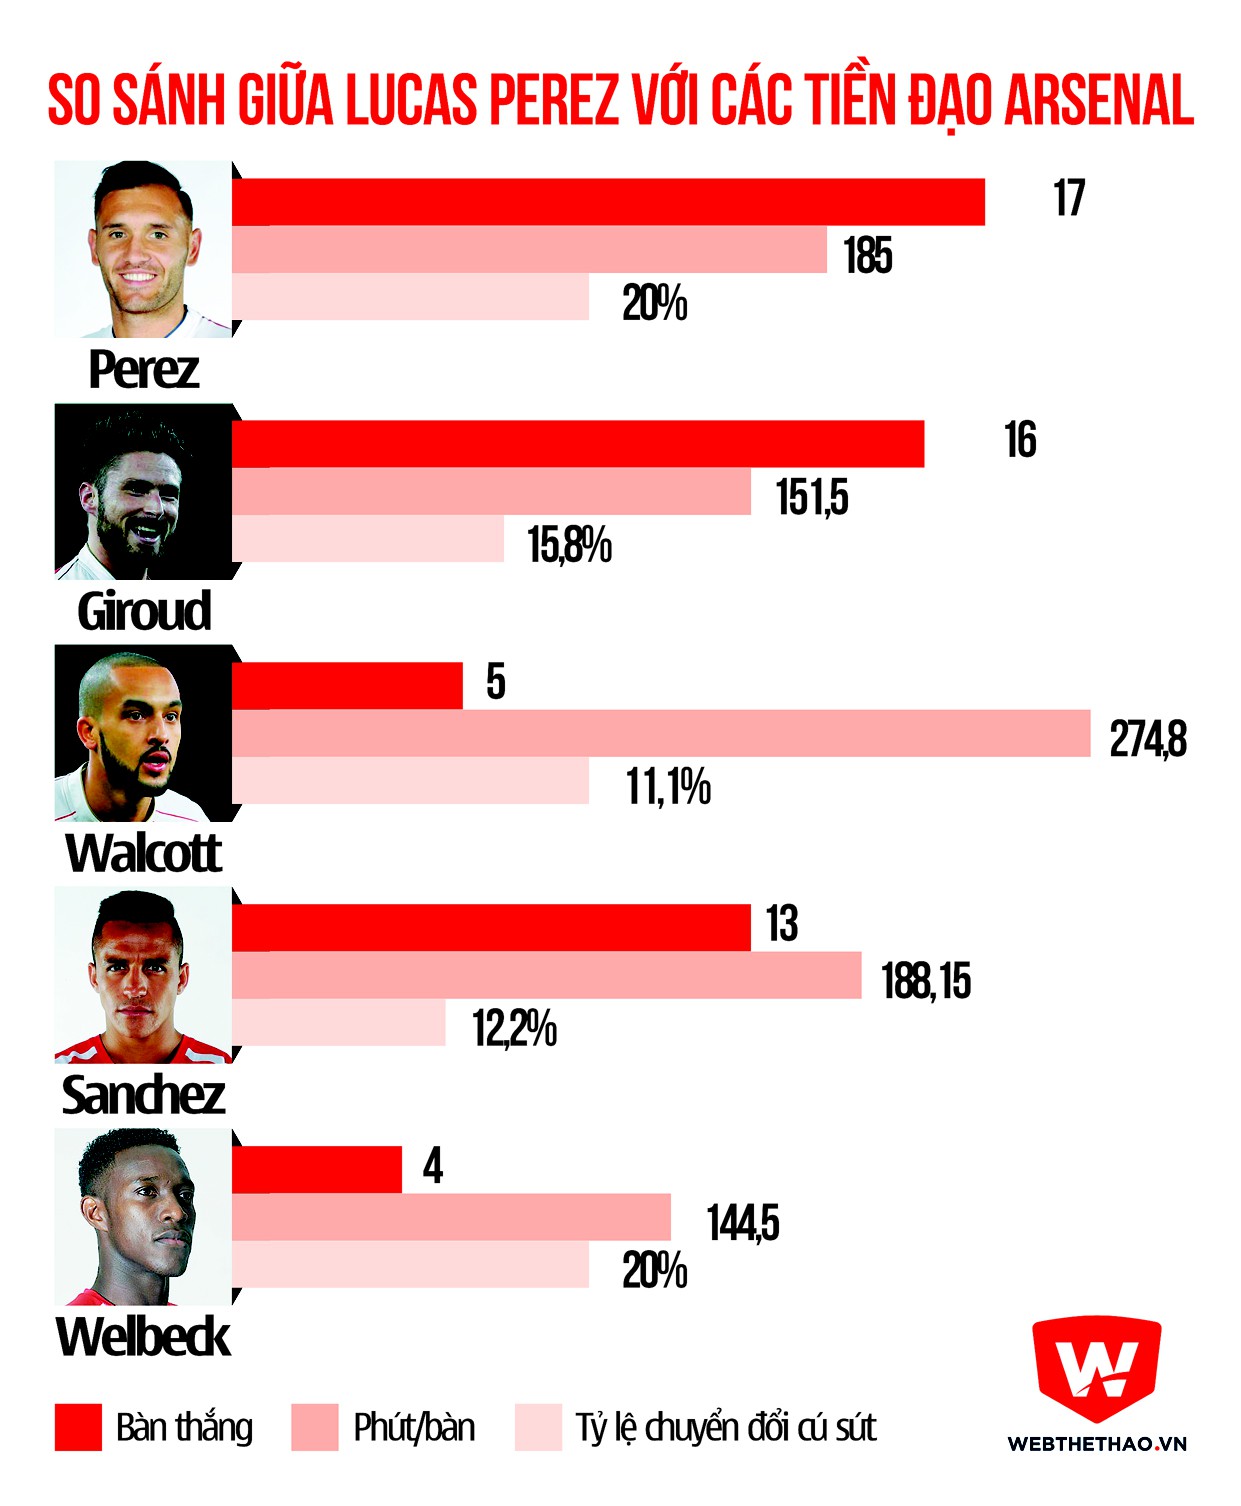 So sánh giữa Lucas Perez và các tiền đạo Arsenal